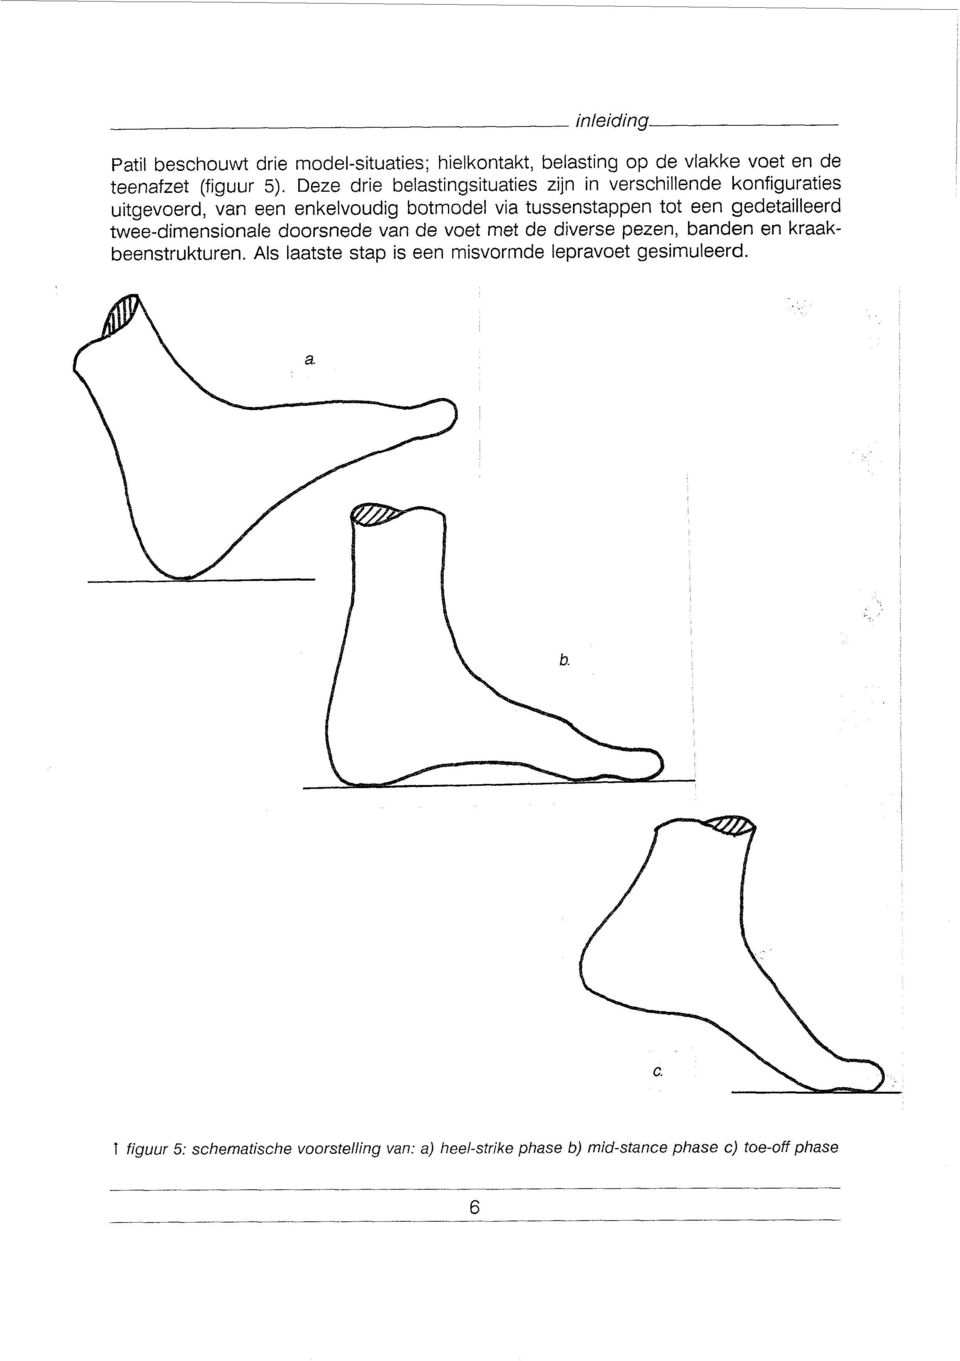 een gedetailleerd twee-dimensionale doorsnede van de voet met de diverse pezen, banden en kraakbeenstrukturen.